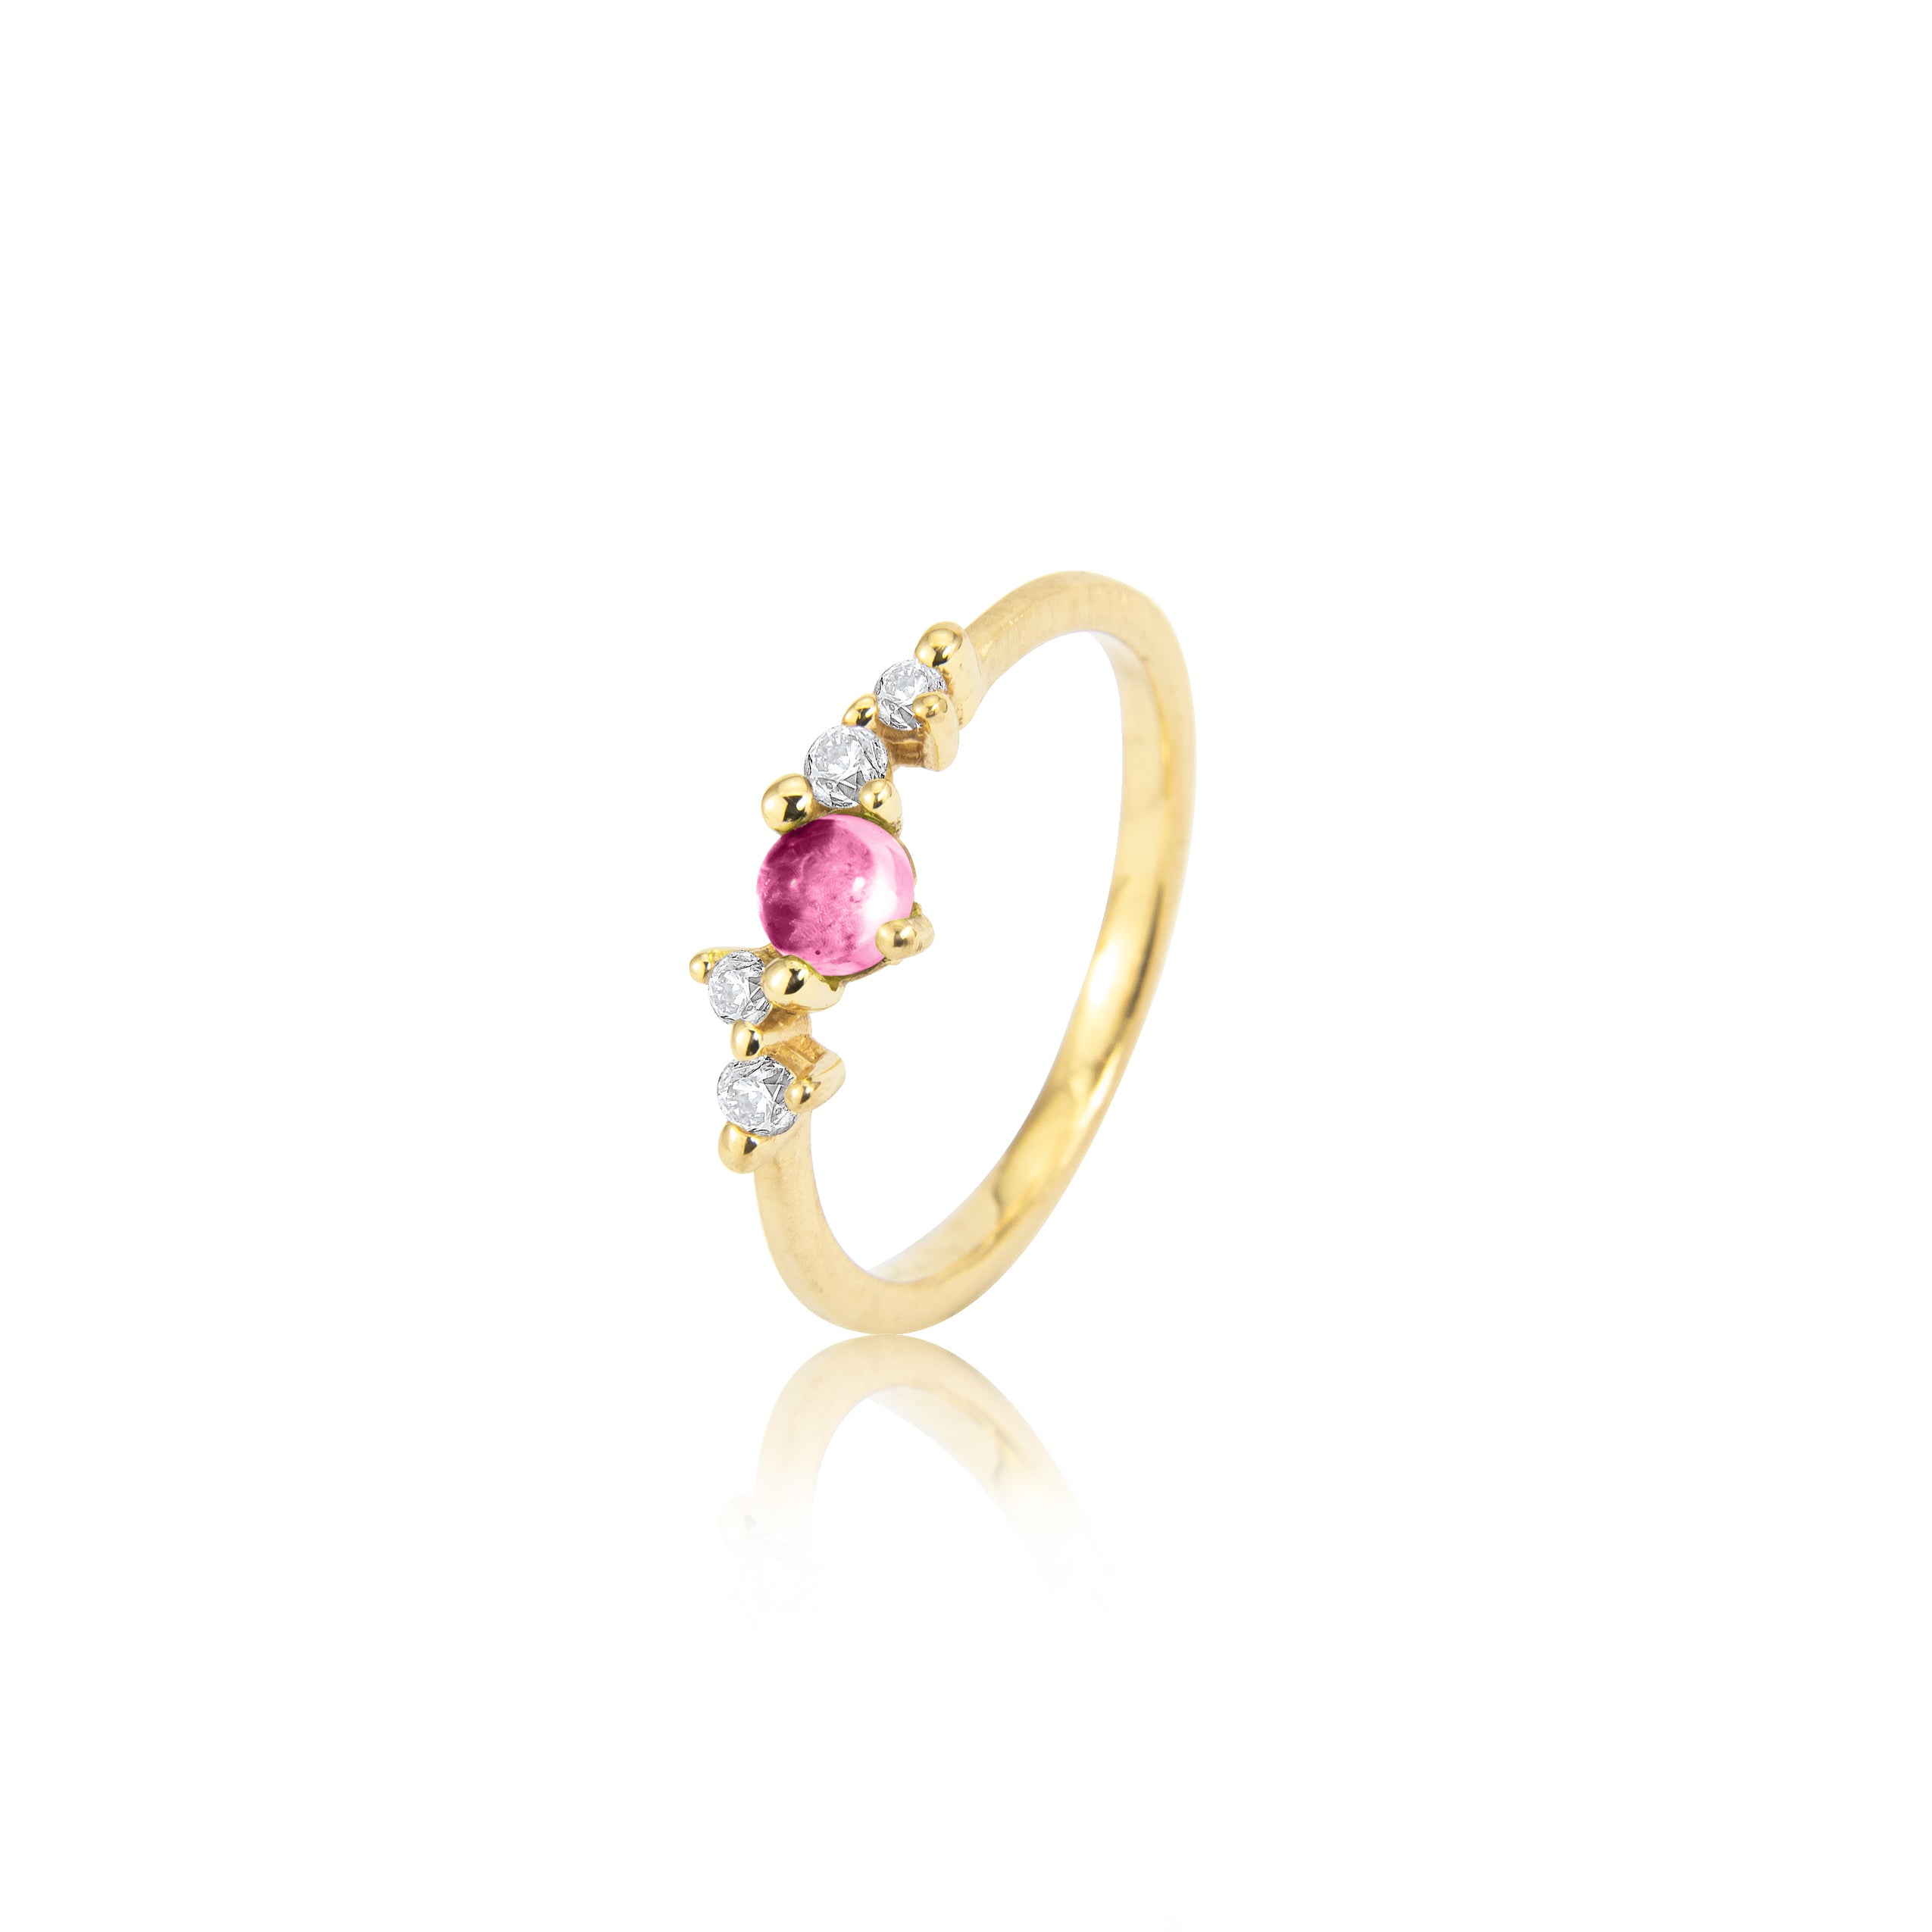 Stellini ring "smal" in 585/- goud met roze toermalijn